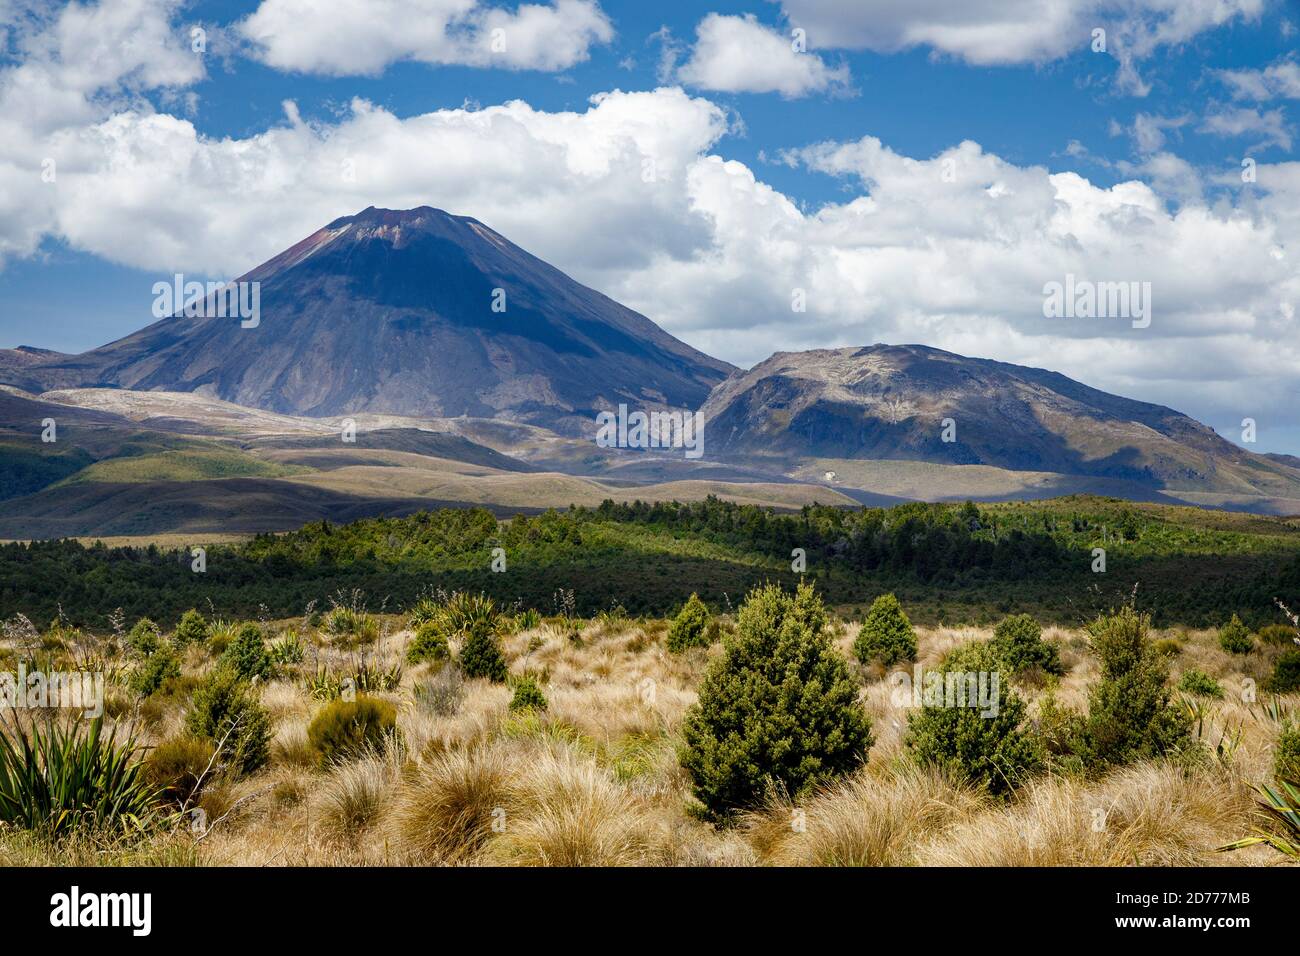 Monte Ngauruhoe, conocido como Monte Doom en el Señor de los Anillos de Peter Jackson, un estratovolcán en la Isla Norte, Nueva Zelanda. Foto de stock